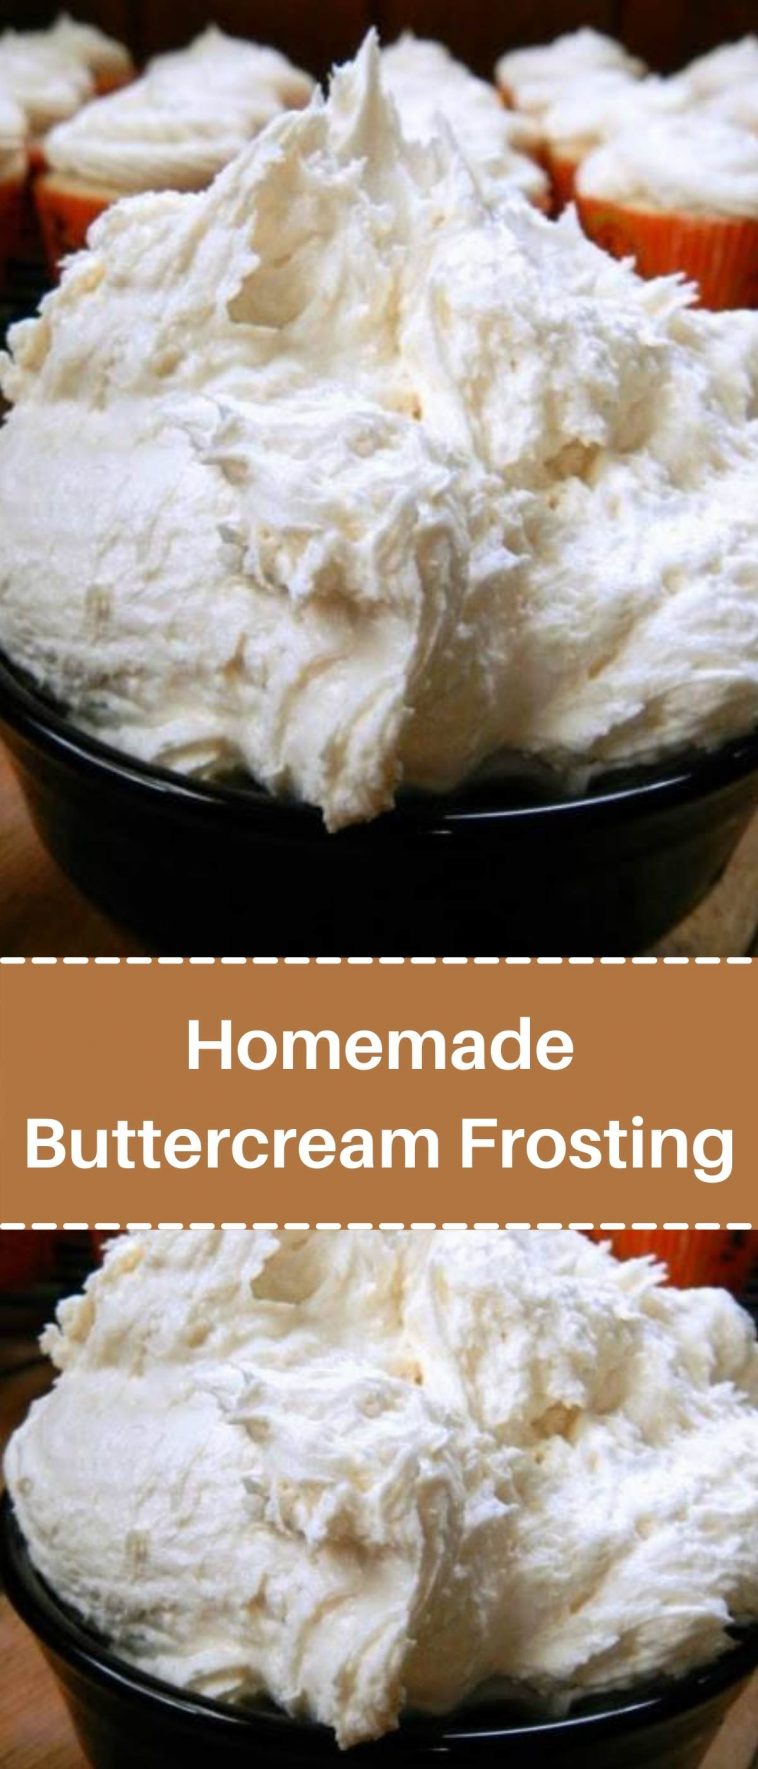 Homemade Buttercream Frosting